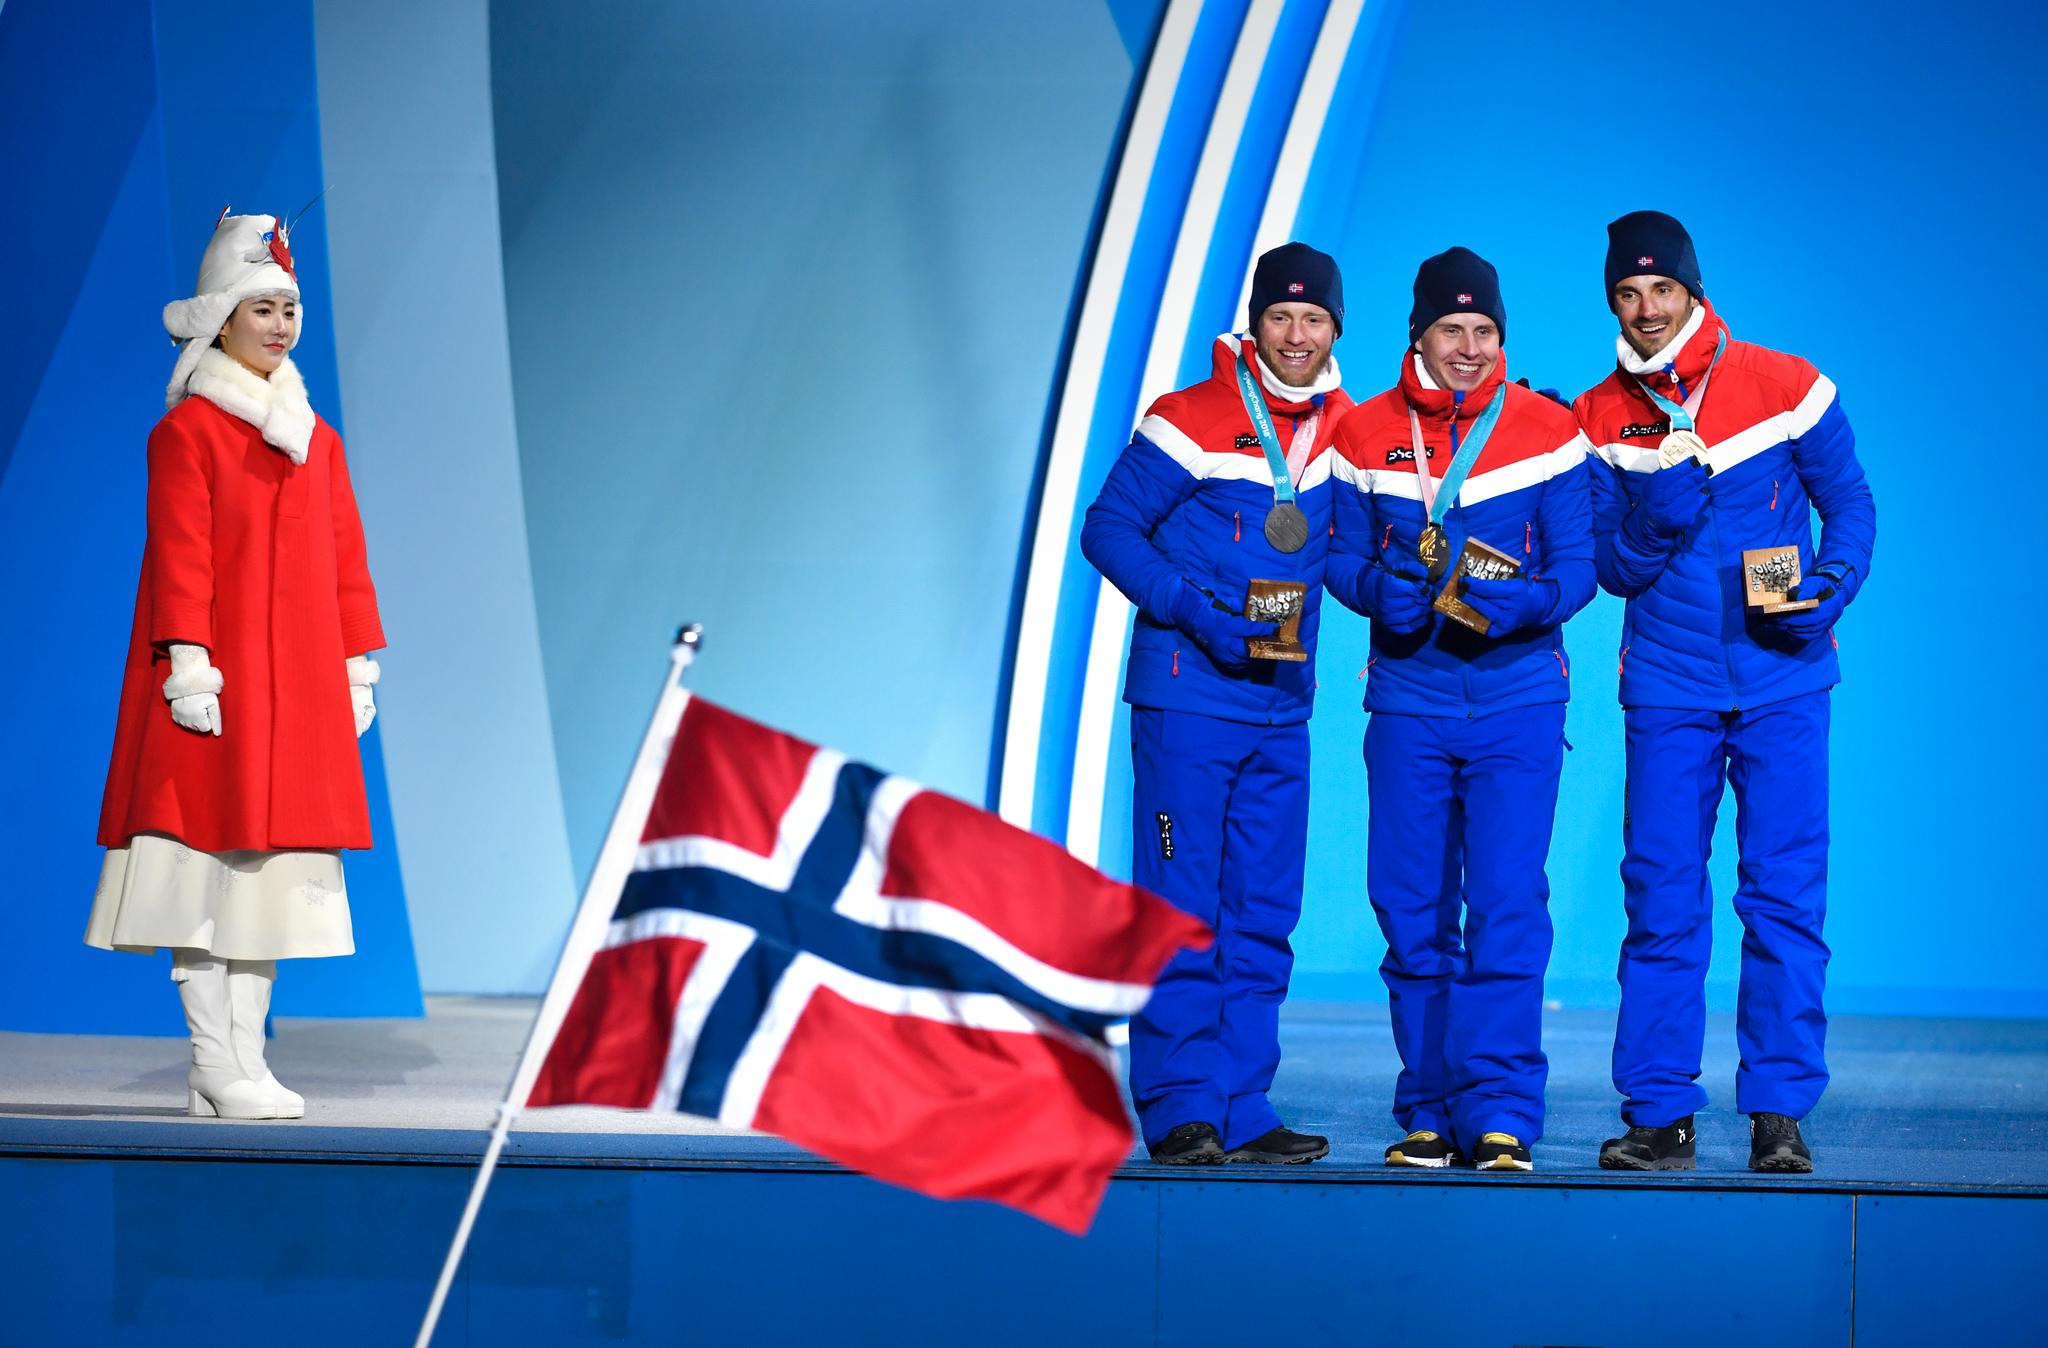 OL-MEDALJE: Hans Christer Holund (t.h.) tok OL-bronse på 30 km med skibytte i Pyeongchang i 2018. Simen Hegstad Krüger (i midten) tok gullet, foran Martin Johnsrud Sundby (t.v.).